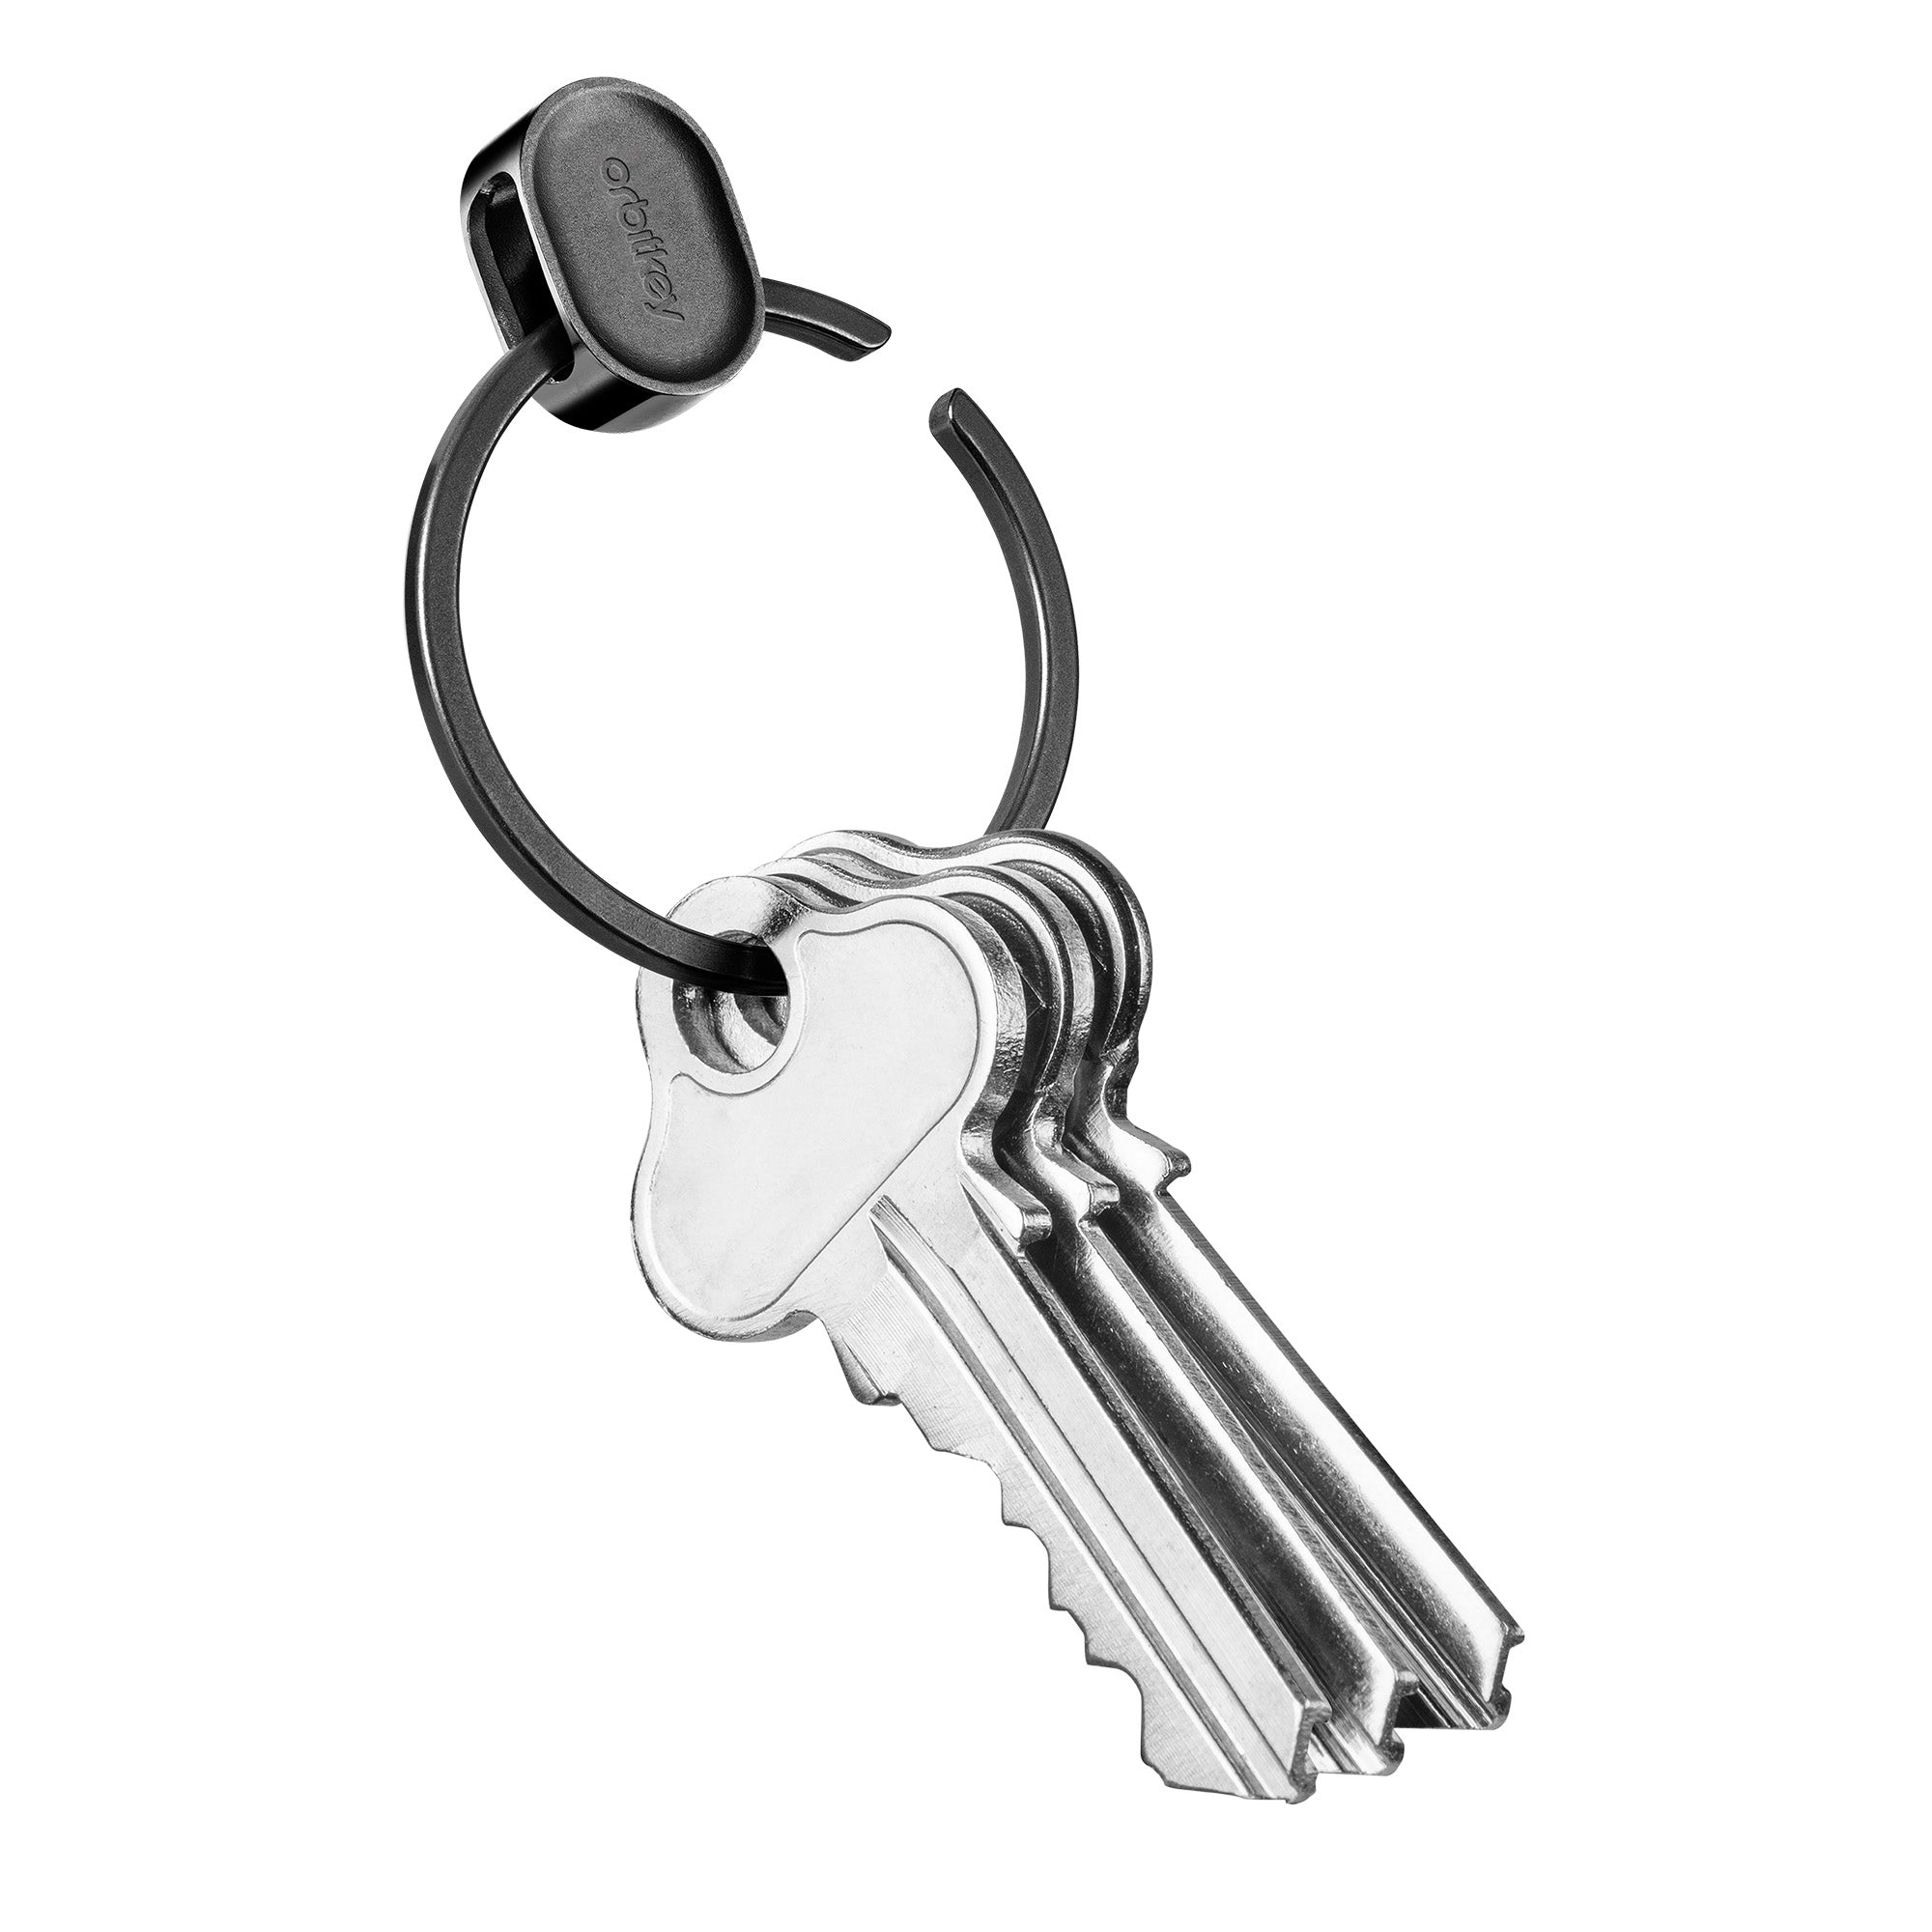 Orbitkey Ring V2 Black│Sleutelhanger Zwart│PRN2-BLK-102│sleutelring geopend met sleutels